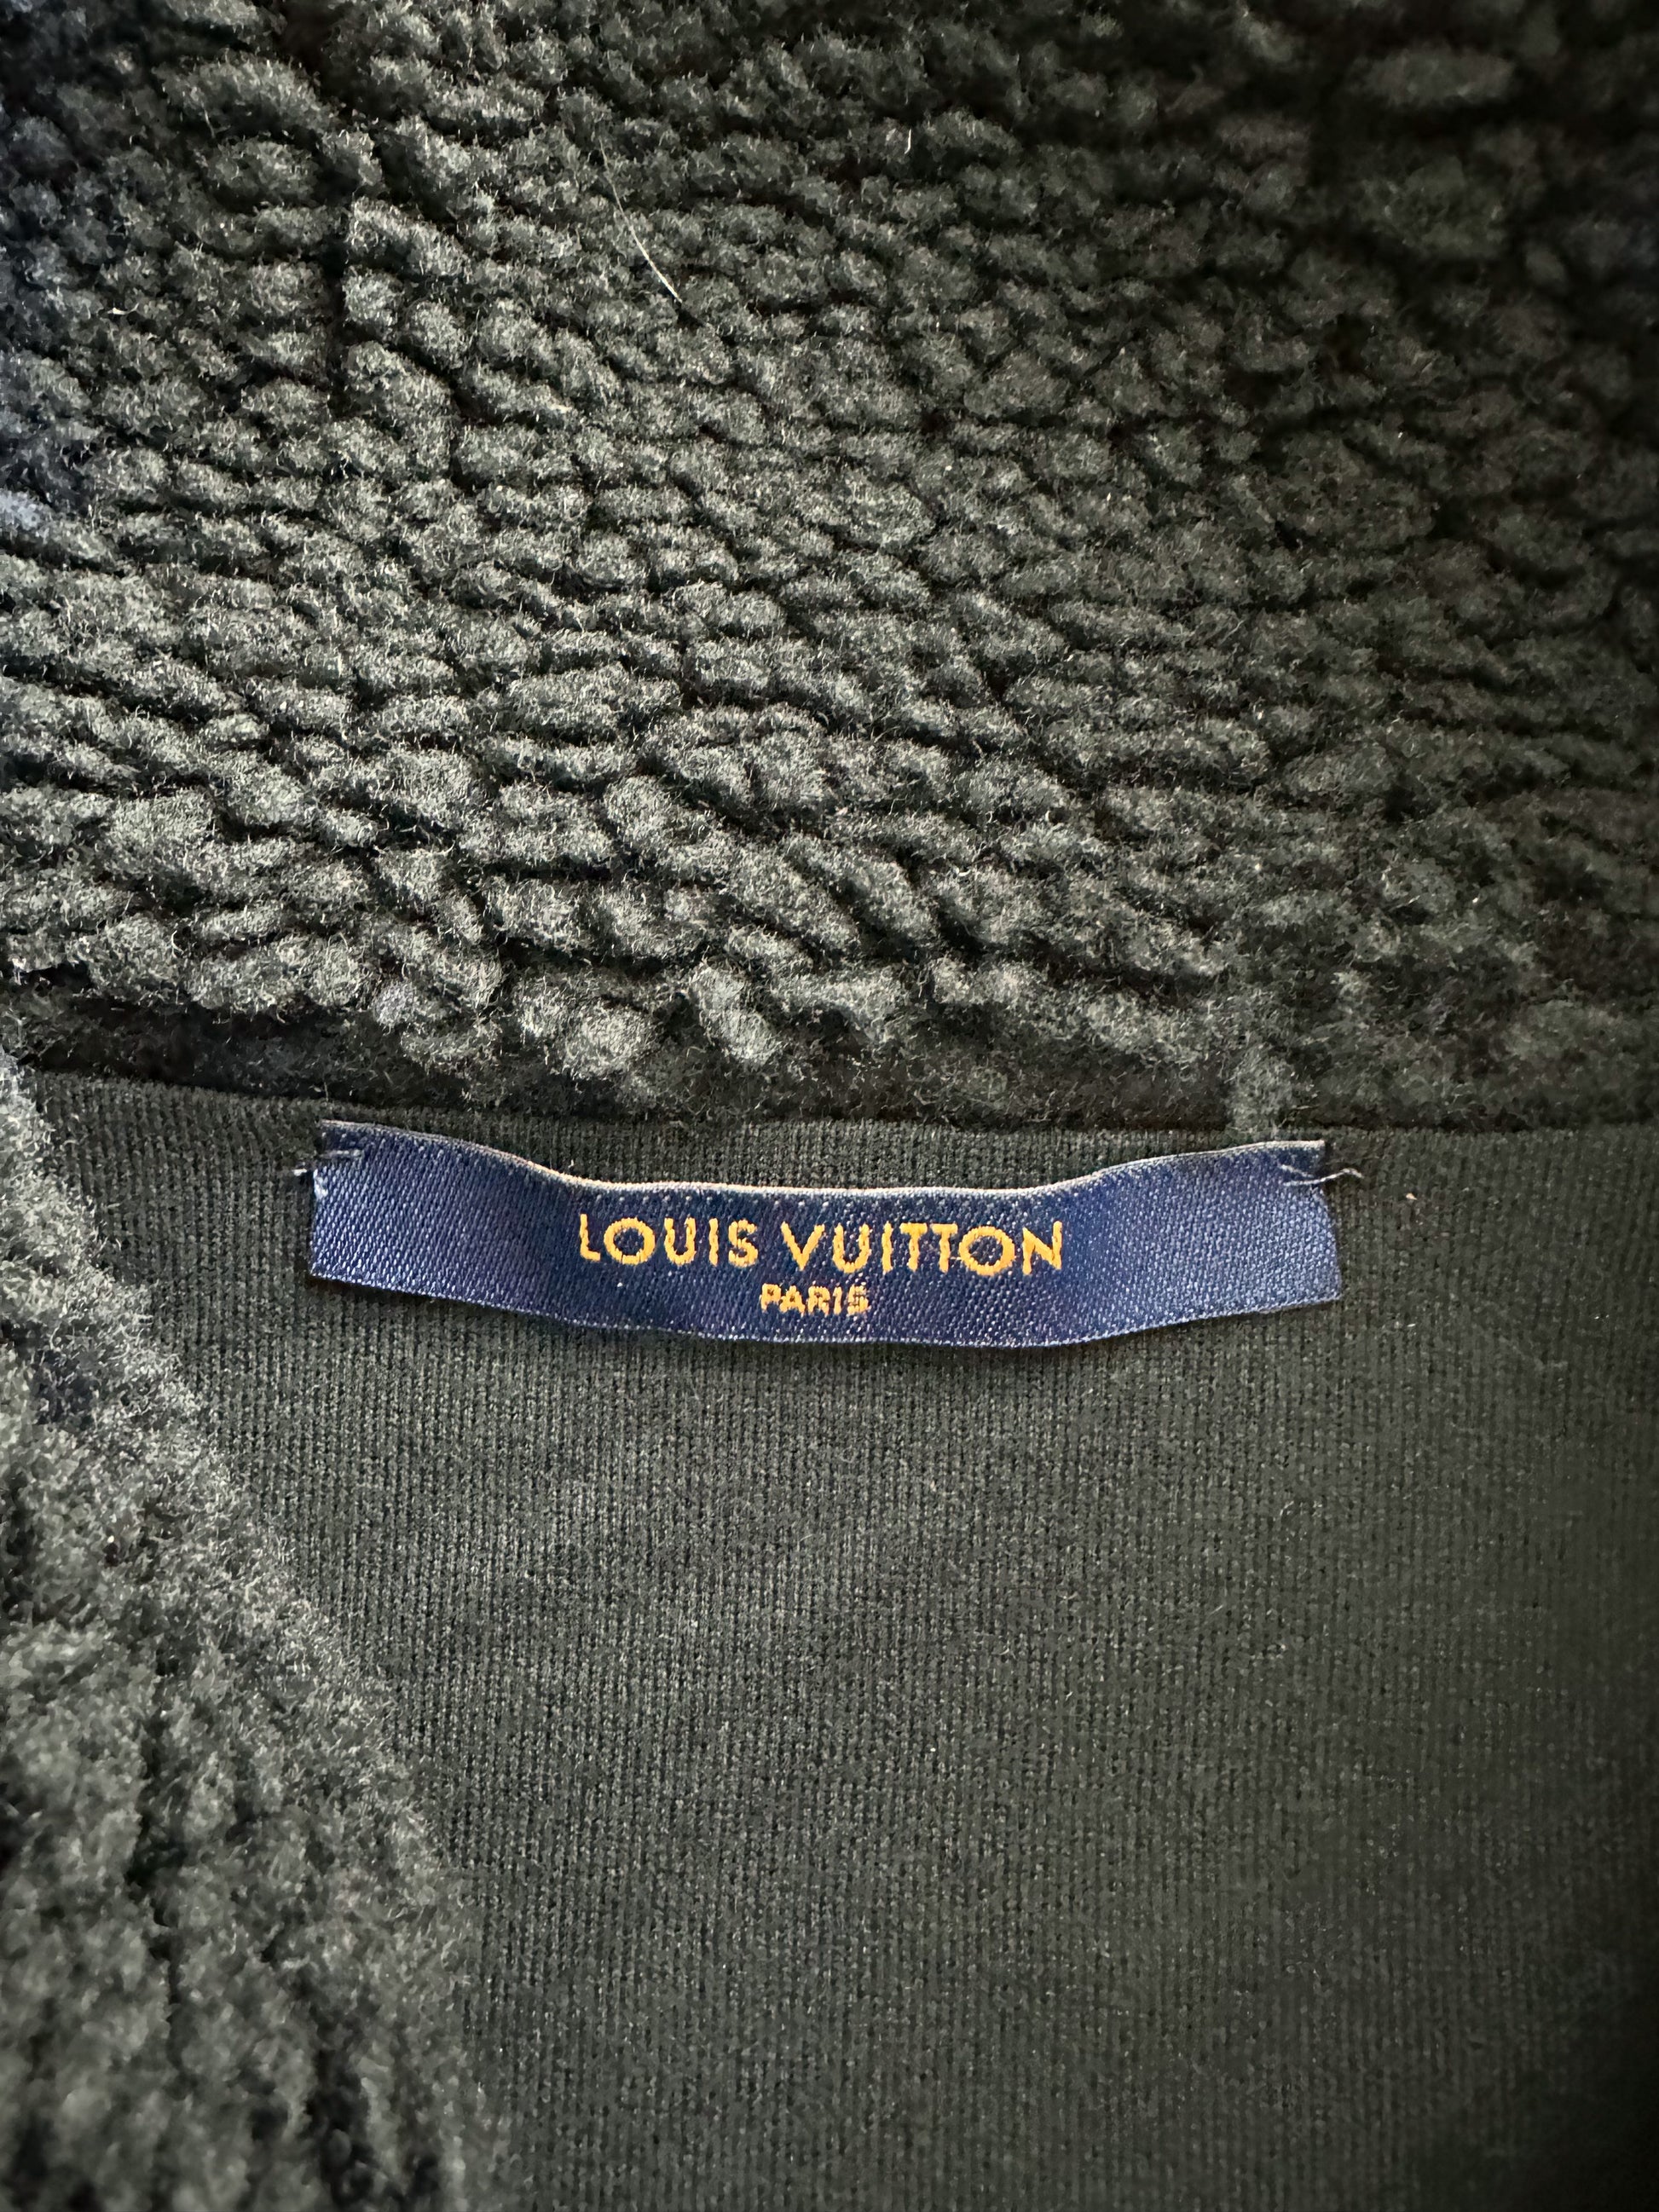 Louis Vuitton Nigo Black & Blue Checkered Fleece